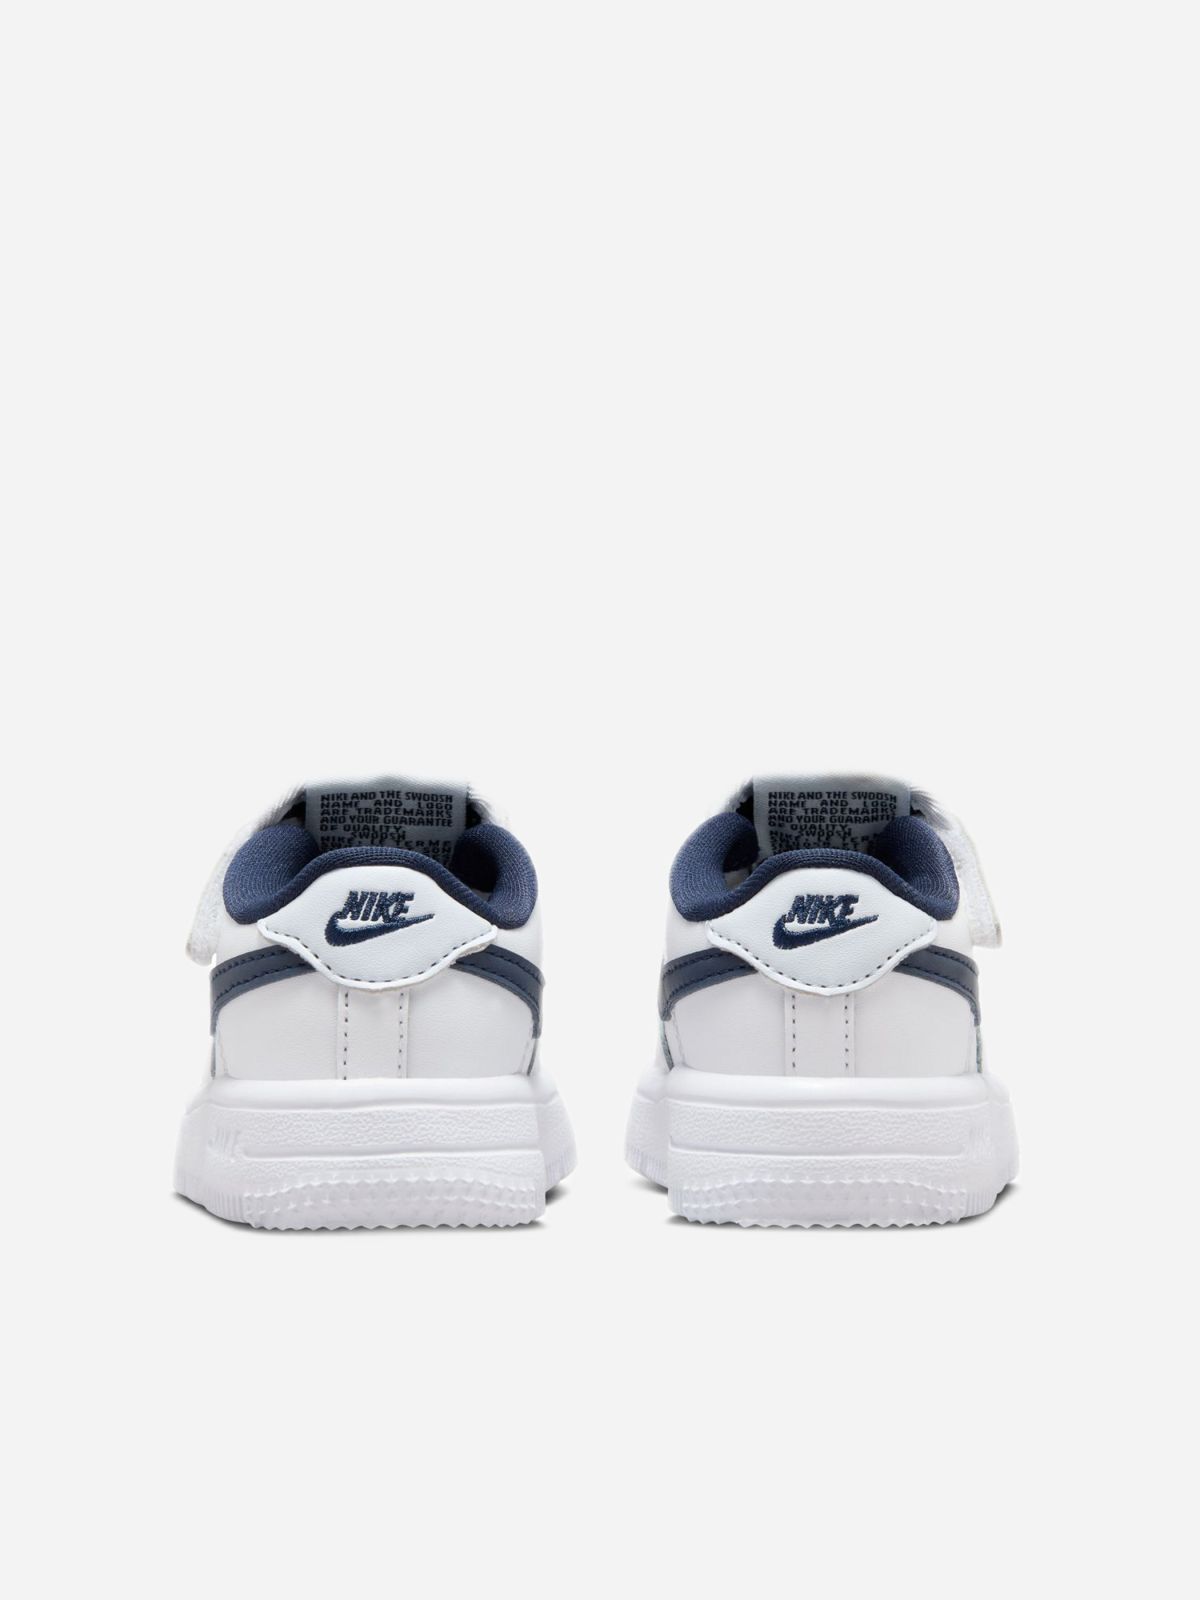  נעלי סניקרס Nike Force 1 Low EasyOn / בייבי בנים של NIKE